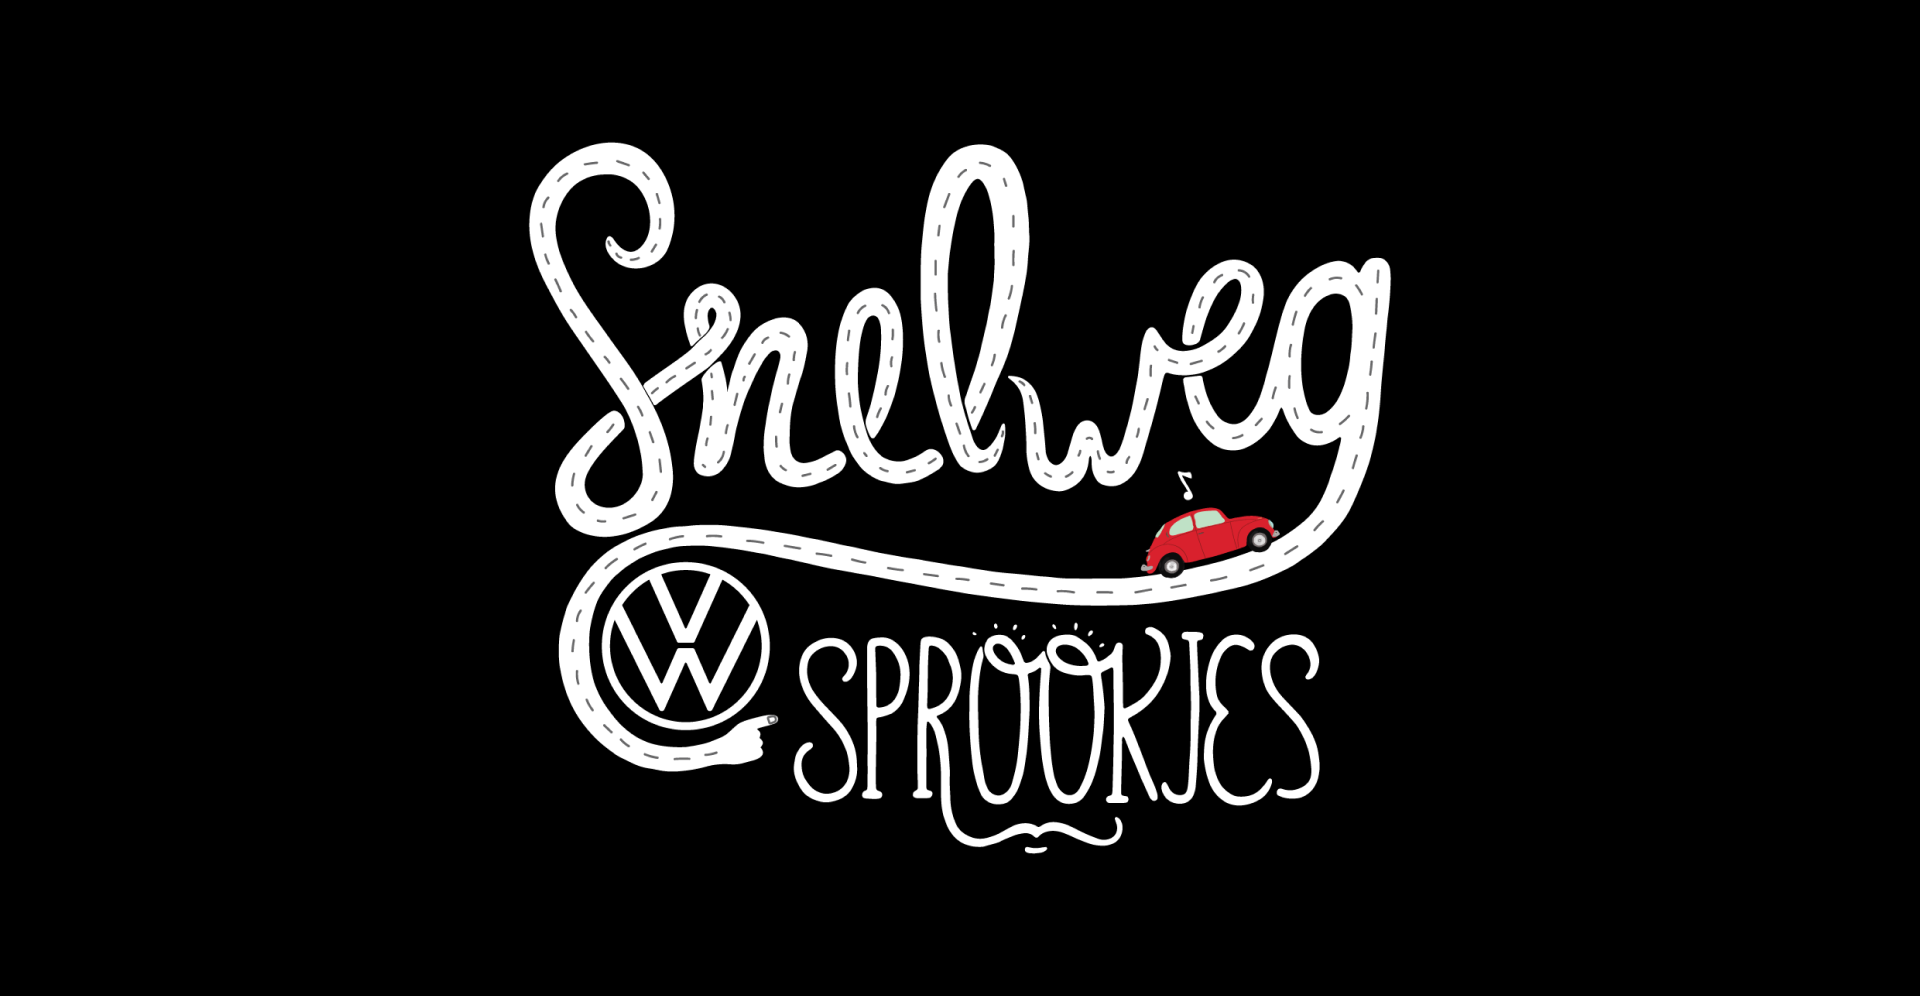 VW Snelweg Sprookies logo